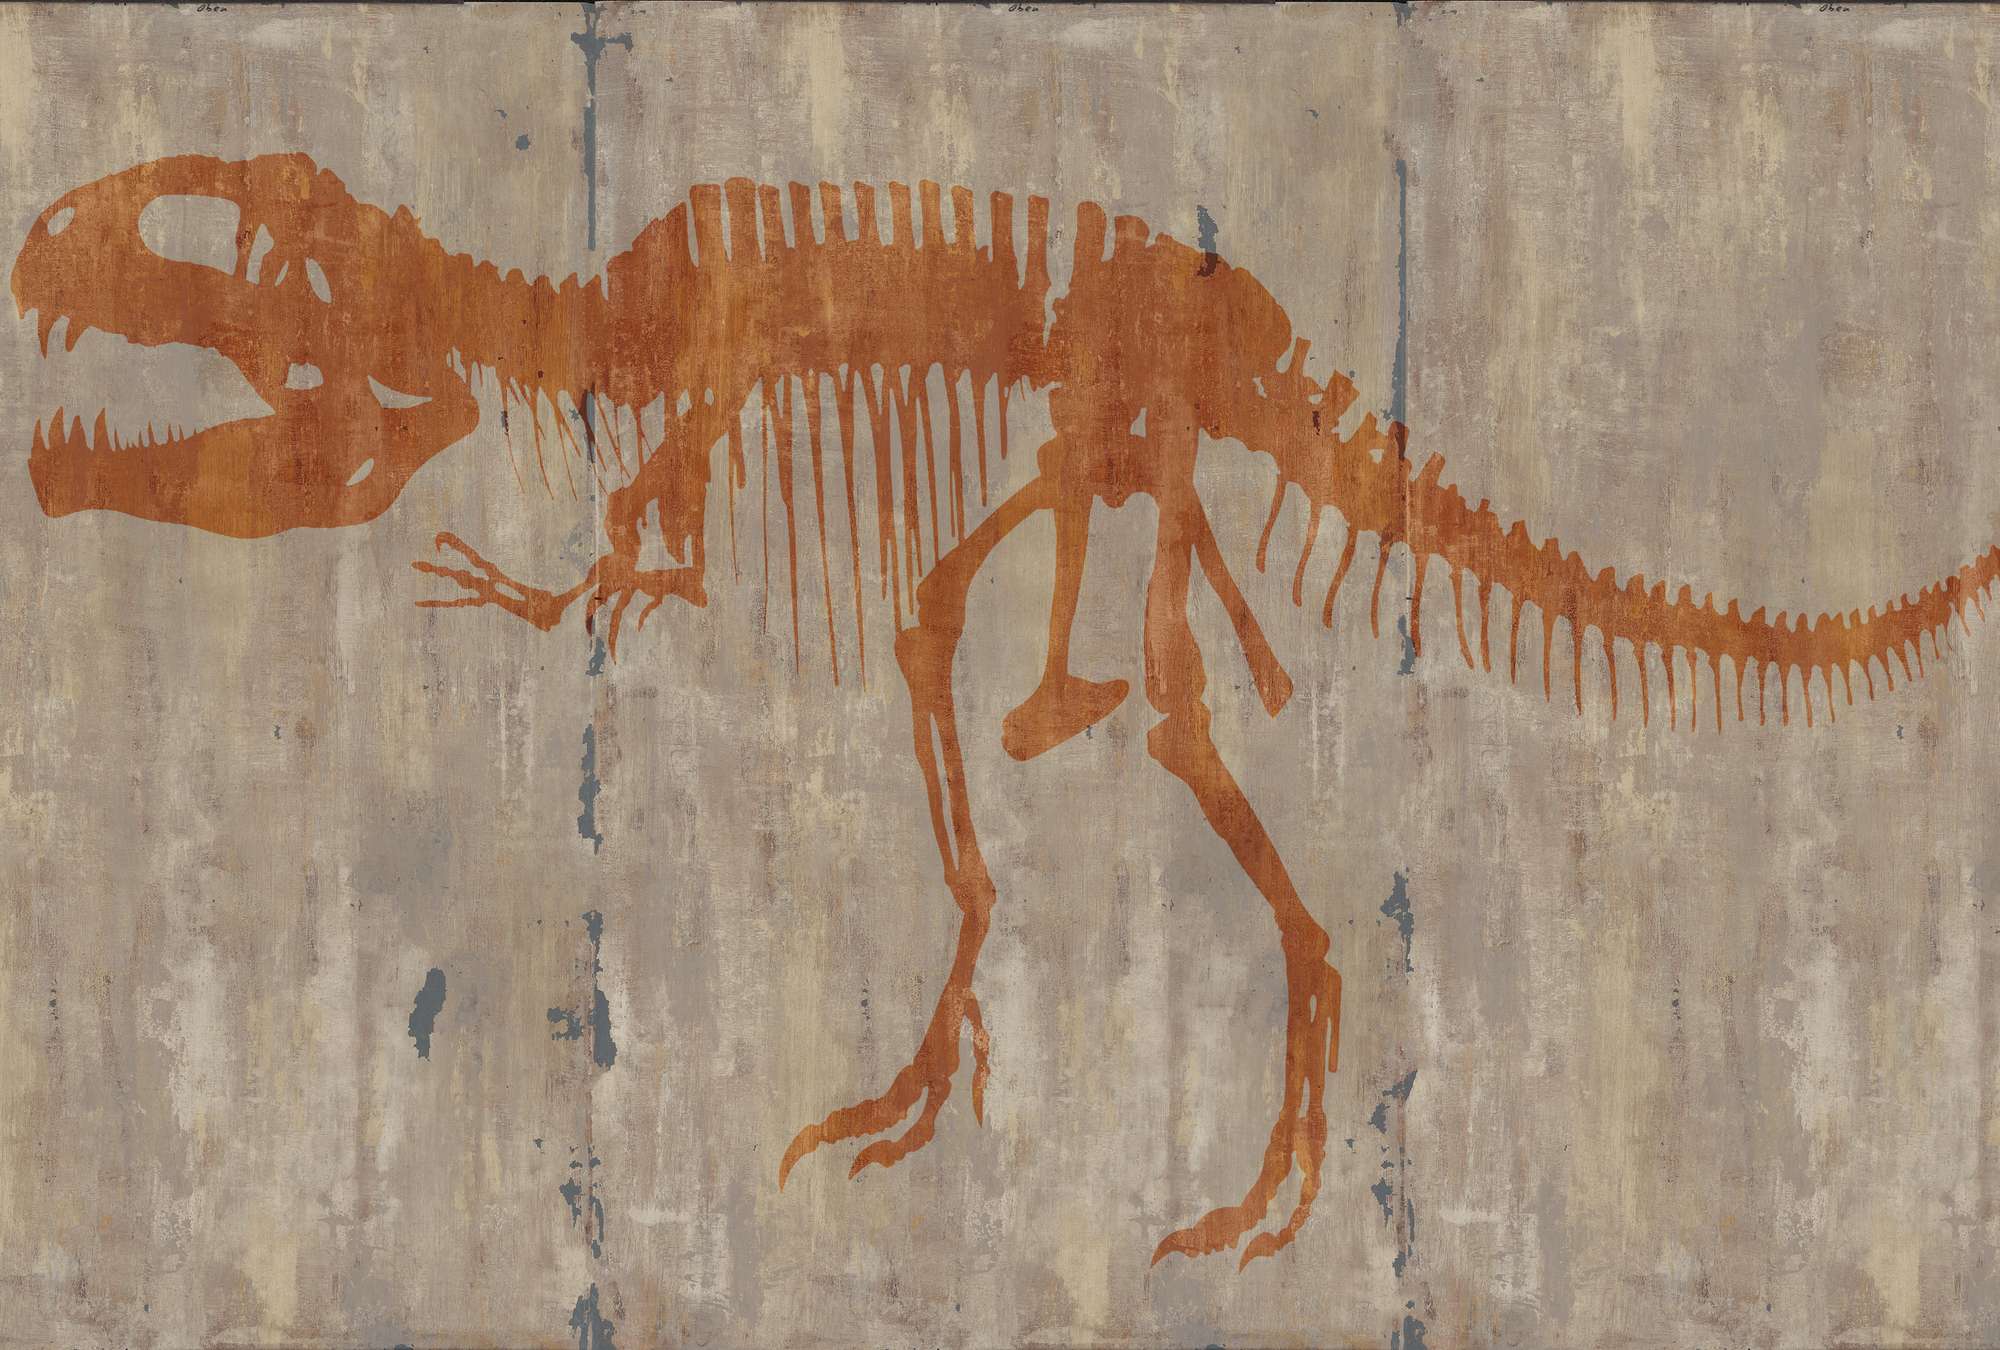             Mural de la cueva de un T-Rex
        